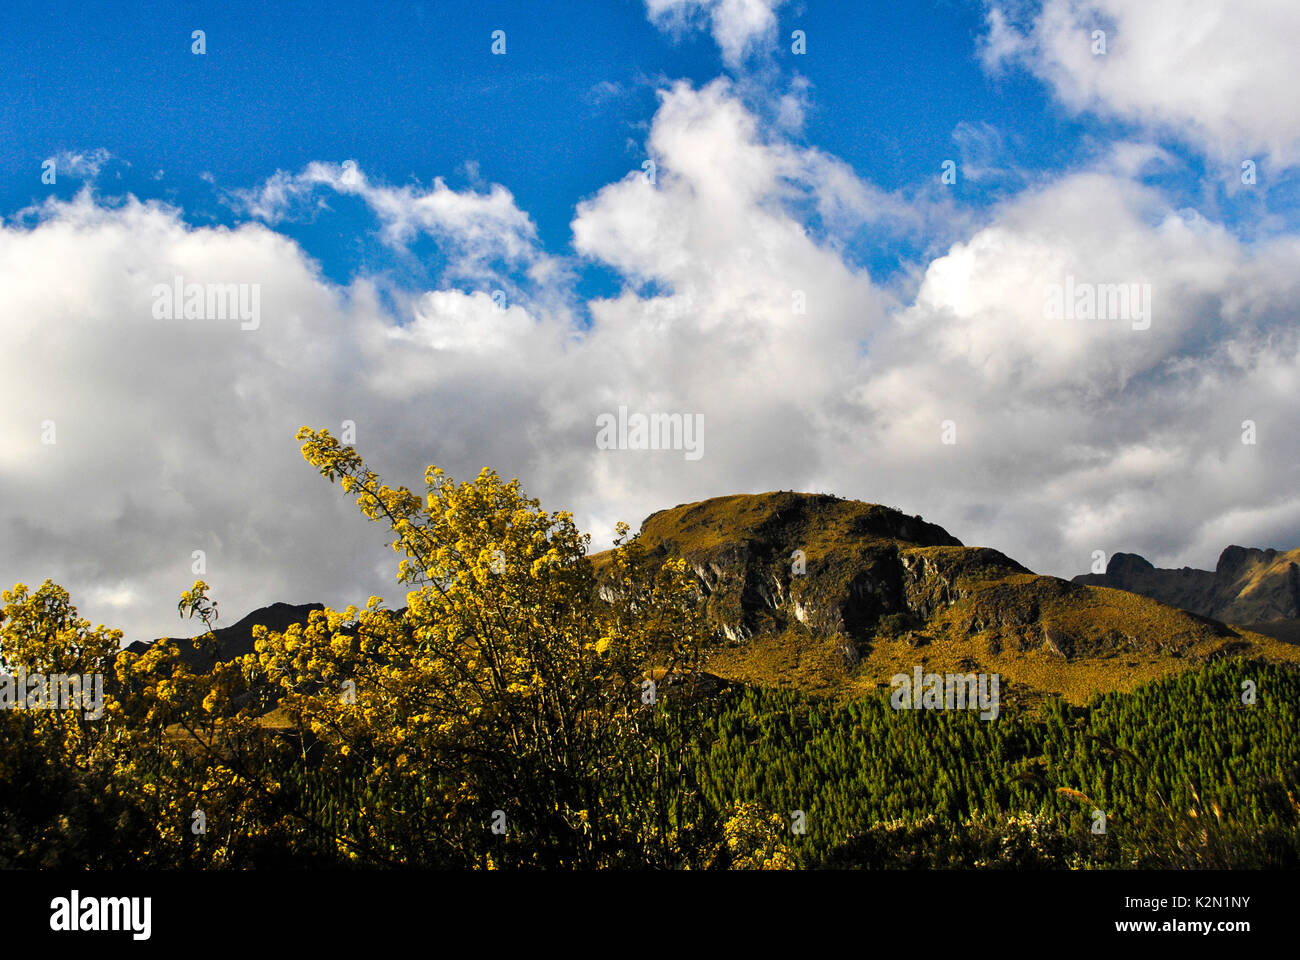 Cajas National Park (en español: Parque Nacional Cajas) en la Sierra del Ecuador. Se encuentra a unos 30 km al oeste de la ciudad de Cuenca. Provincia de Azuay. Ecua Foto de stock